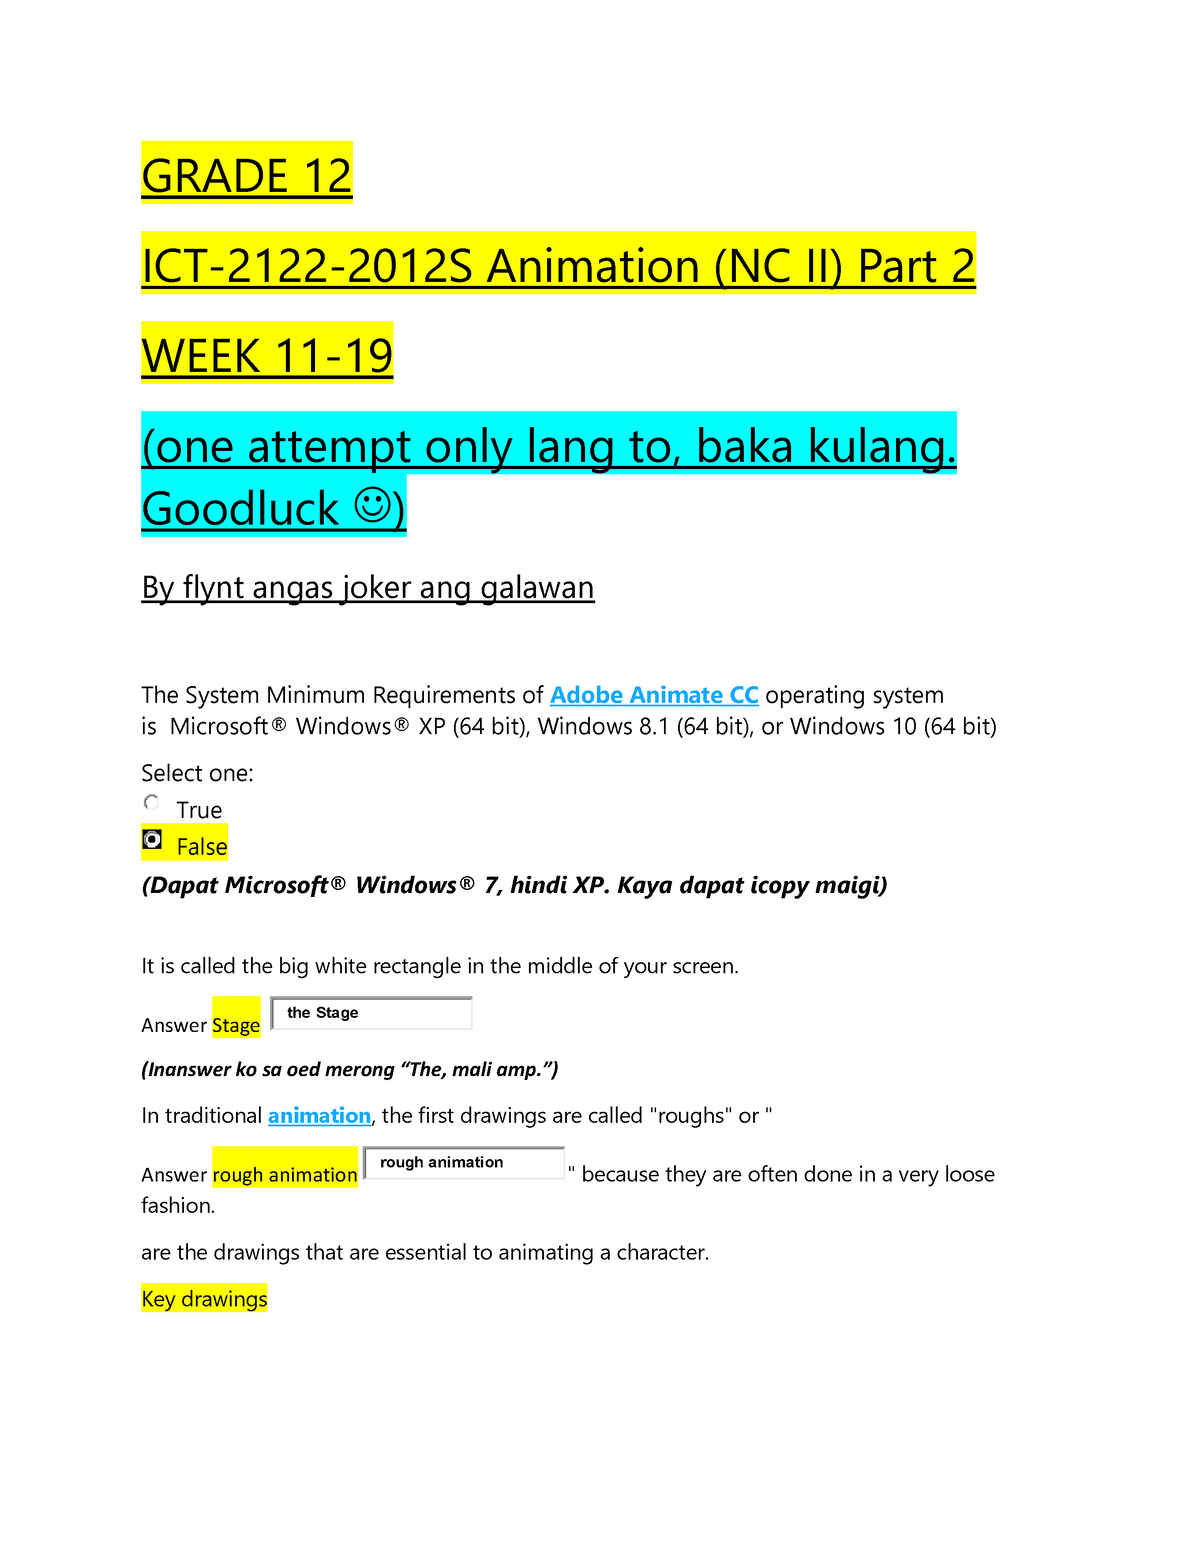 Grade 12 ICT-2122-2012 S Animation (NC II) Part 2 WEEK 11-19 -converted -  GRADE 12 ICT-2122-2012S - Studocu